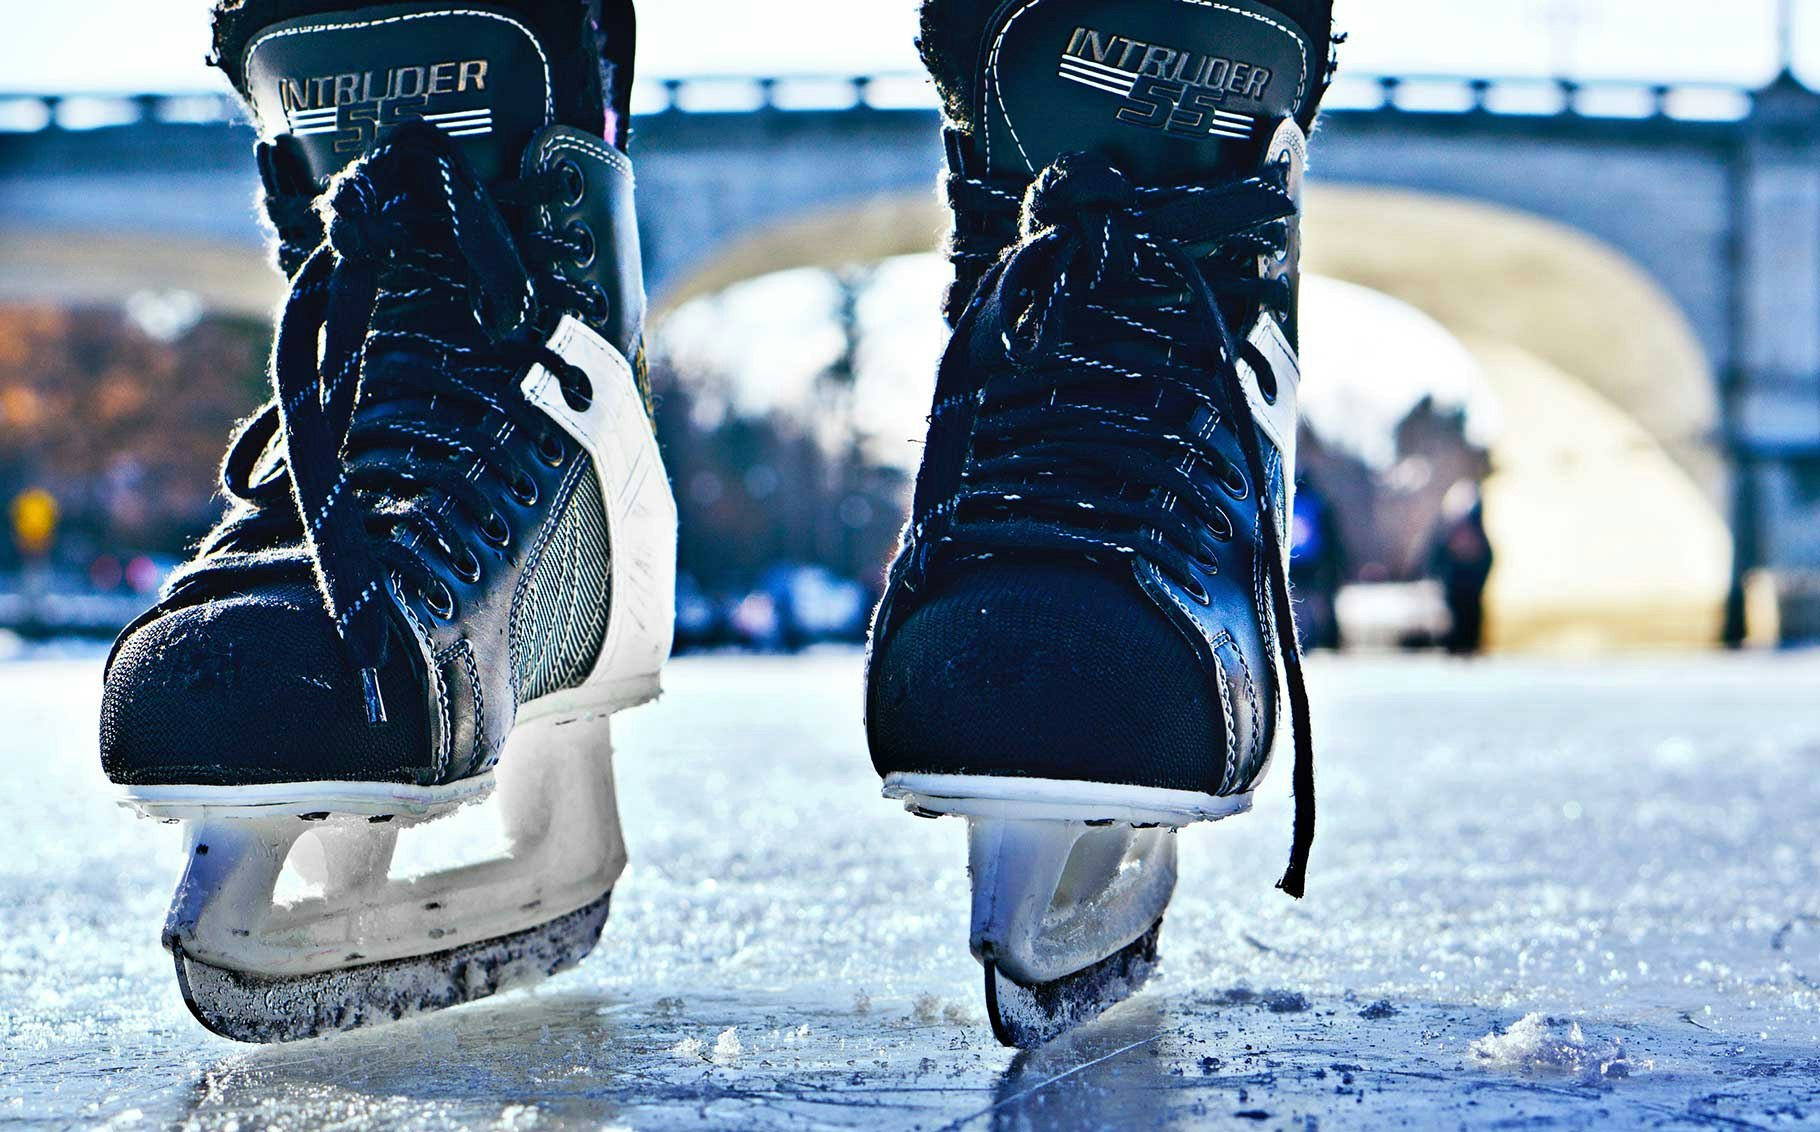 Hockey skate maintenance